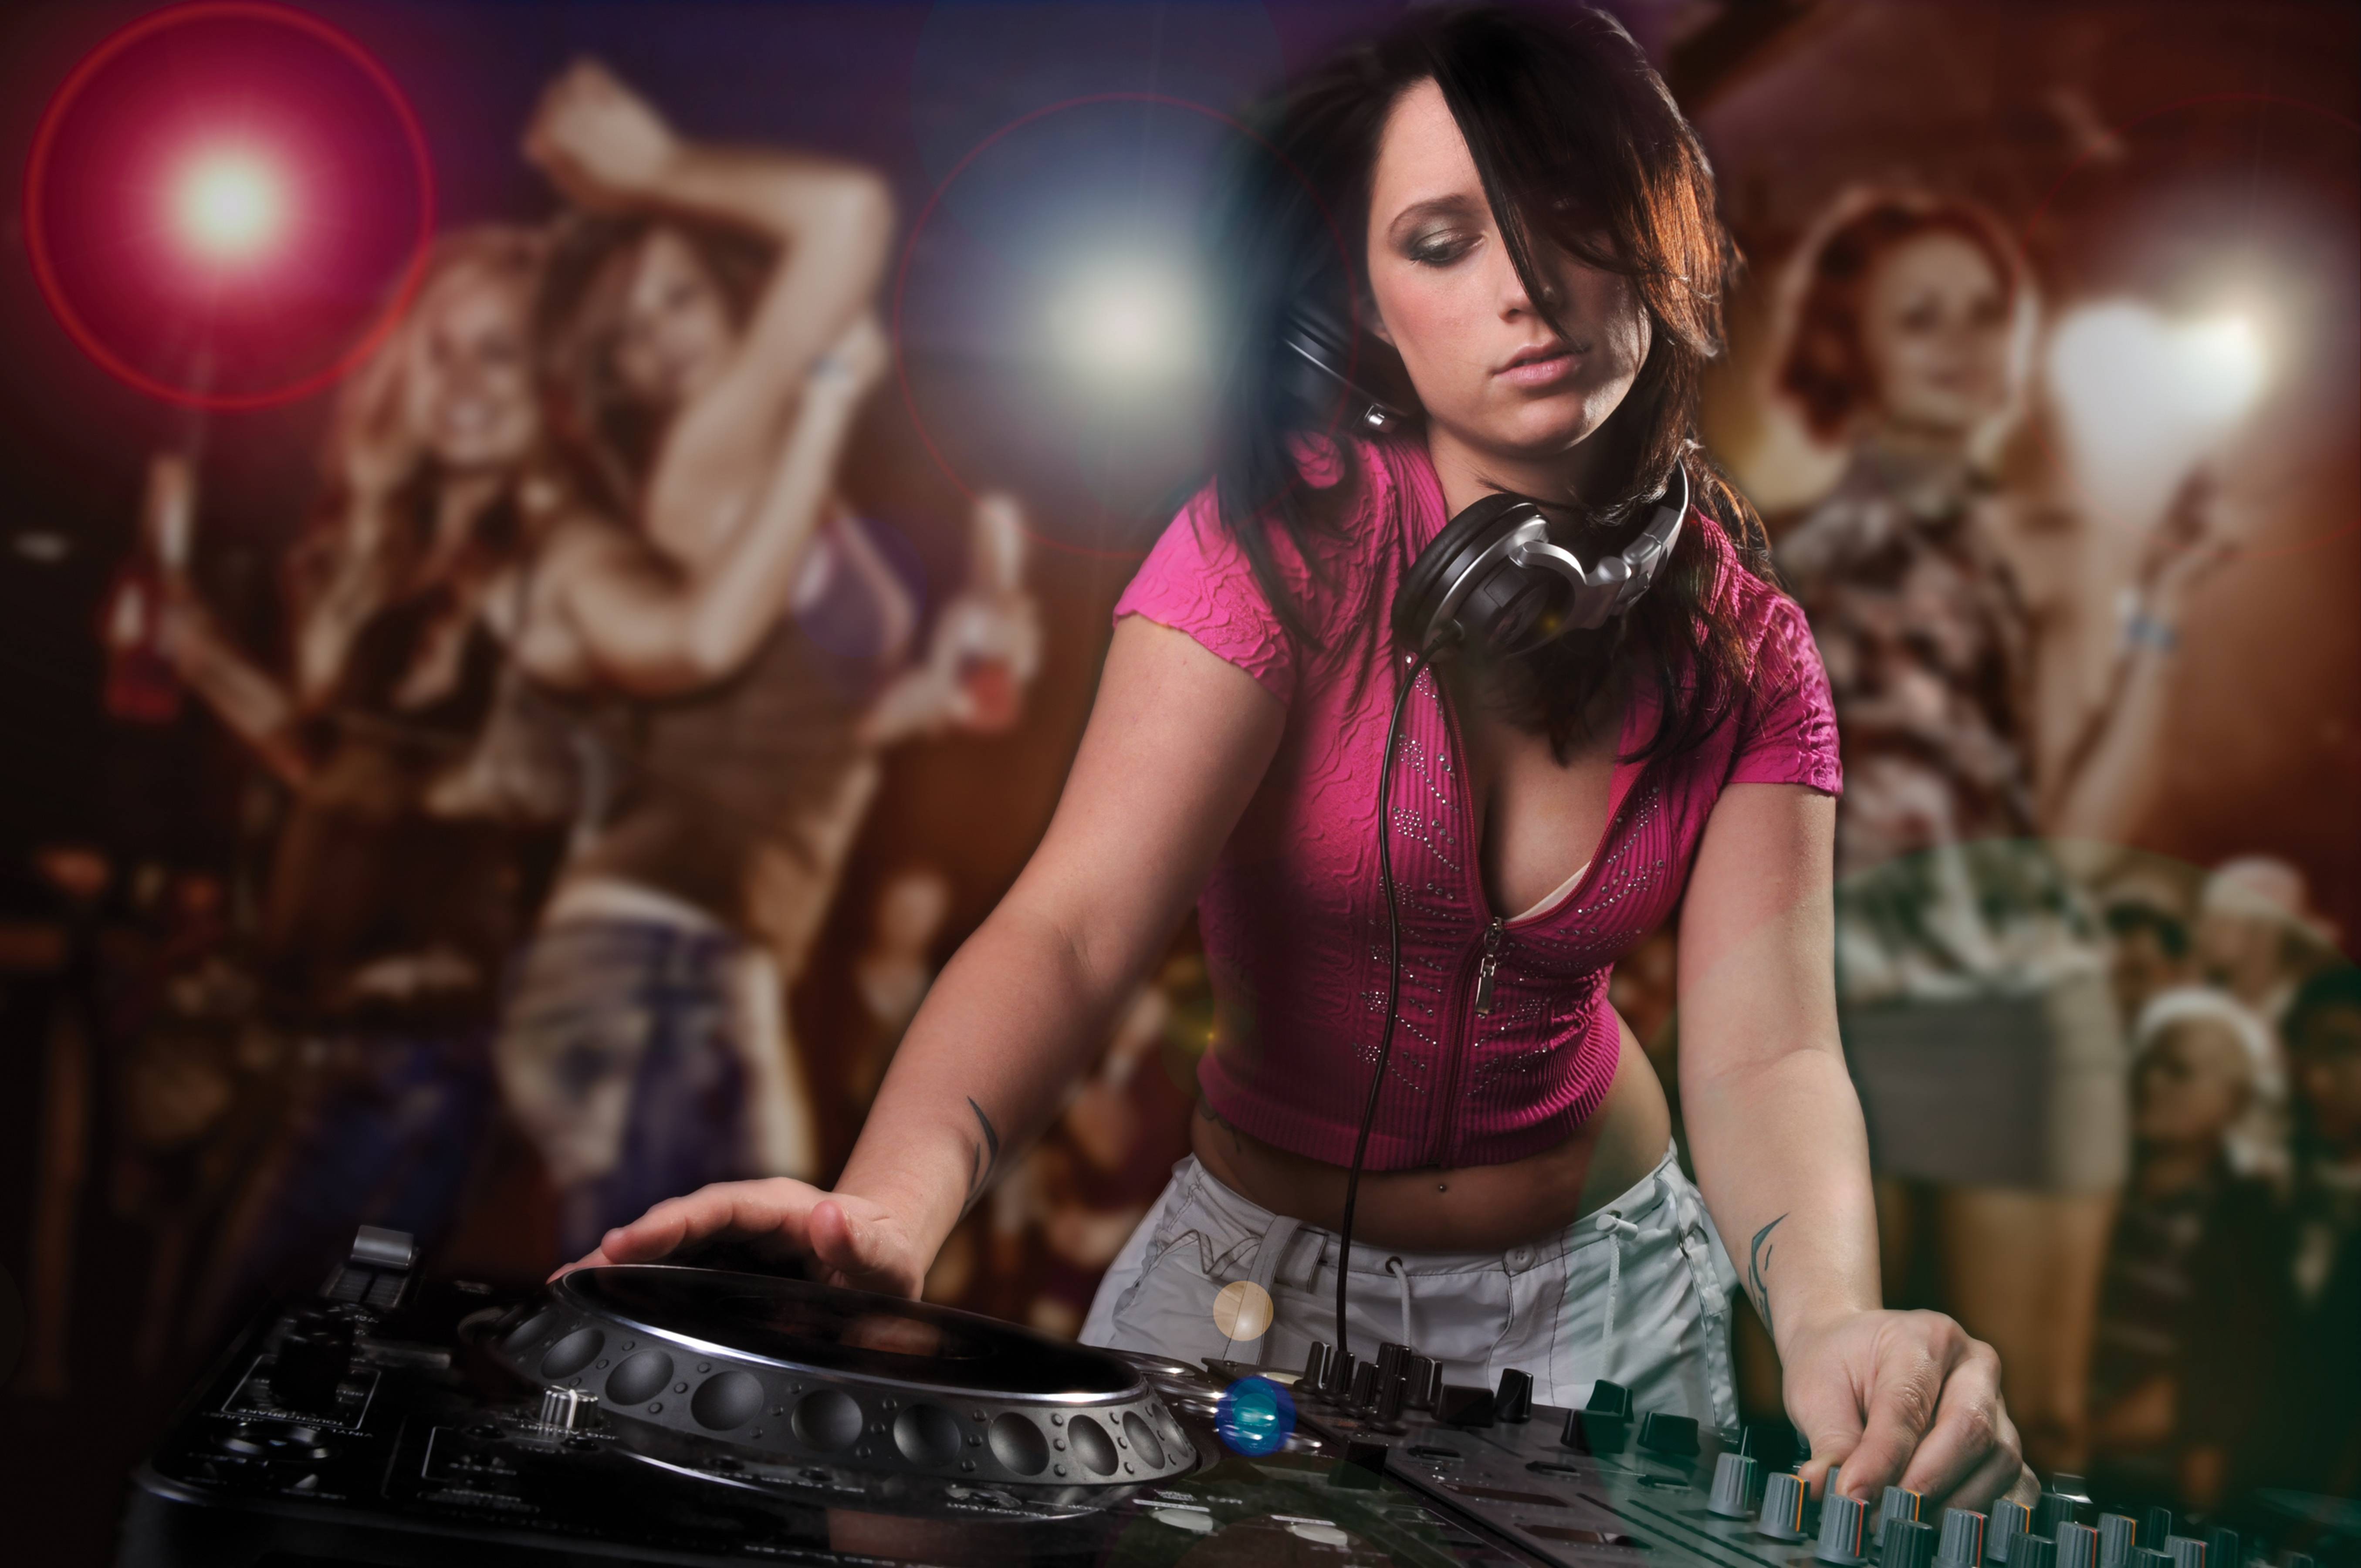 Wallpapers music girl girl DJ on the desktop